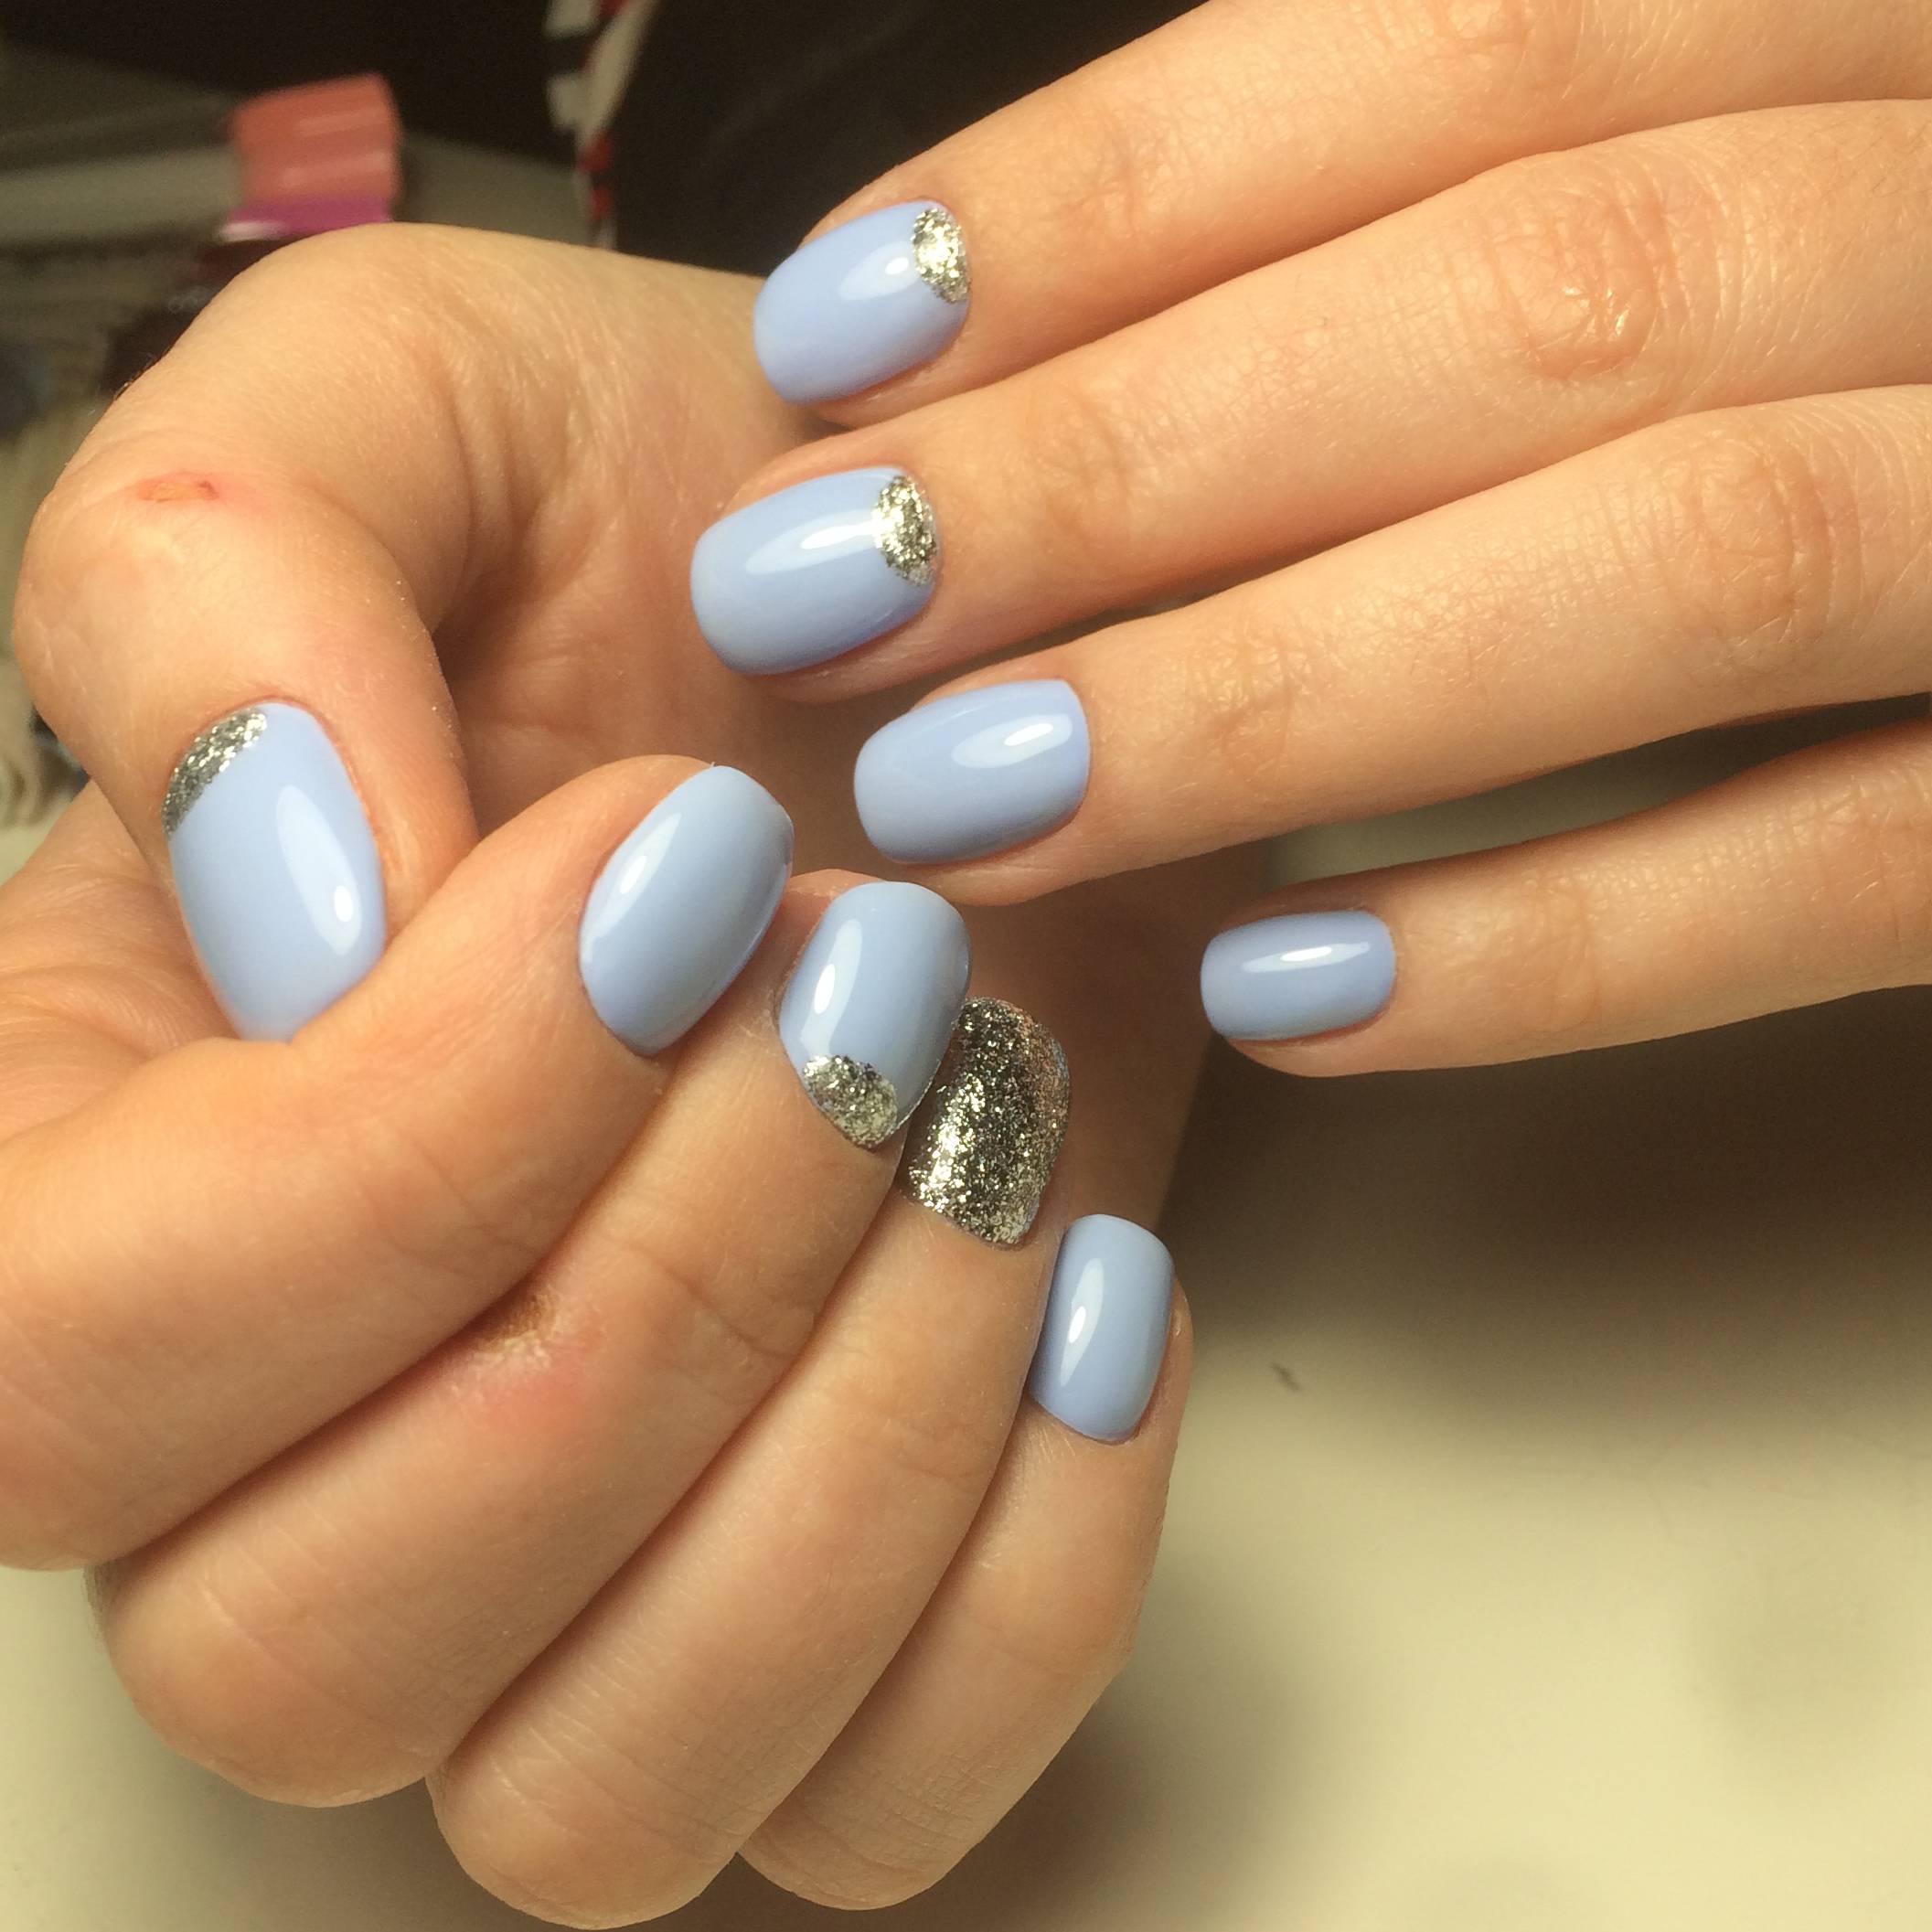 Дизайн ногтей голубого цвета фото